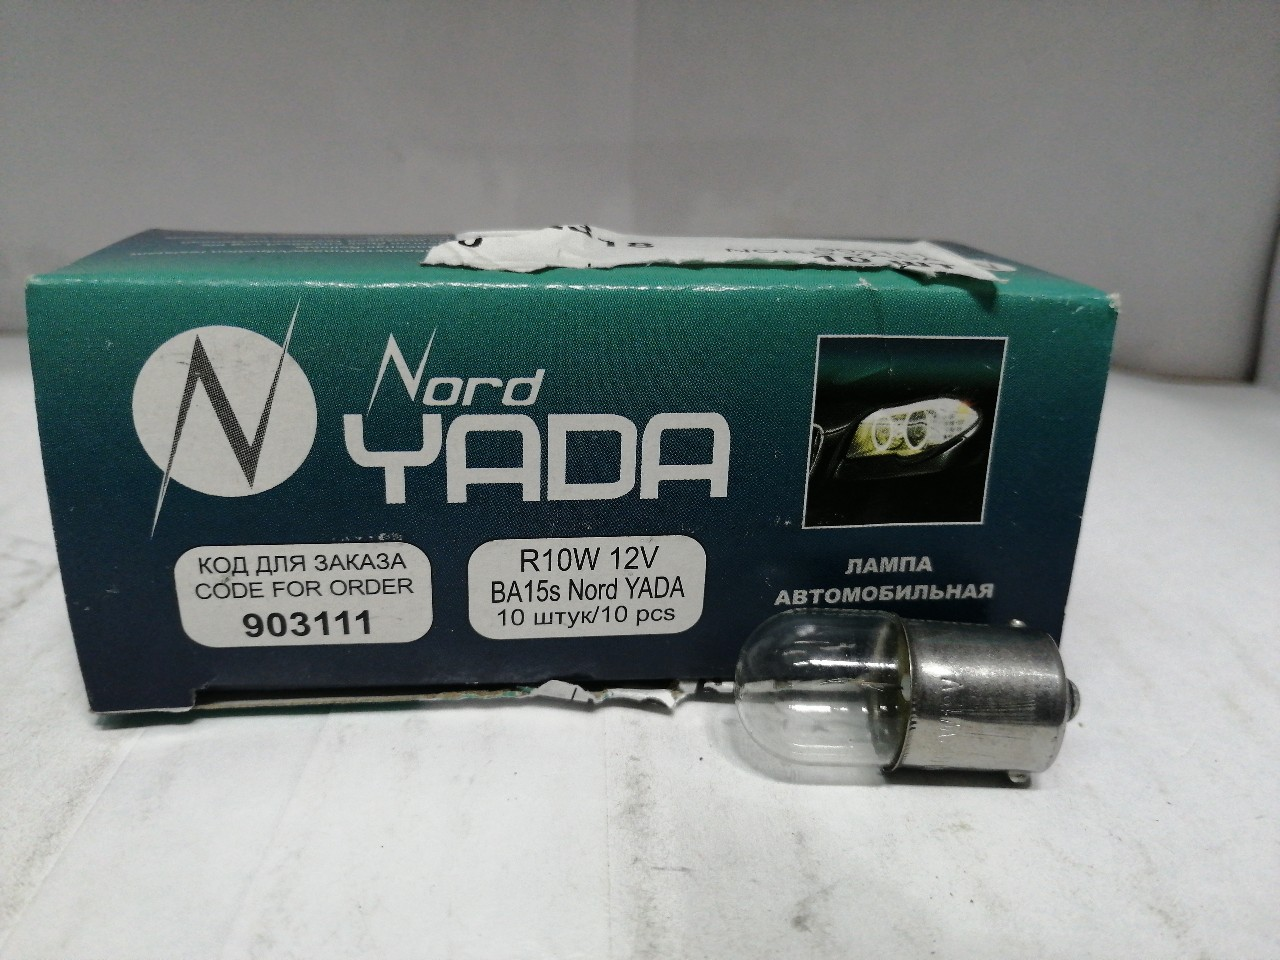 Купить запчасть NORD YADA - 903111 R 10W 12V BA15s (колба прямая) автолампа Nord YADA (габариты)